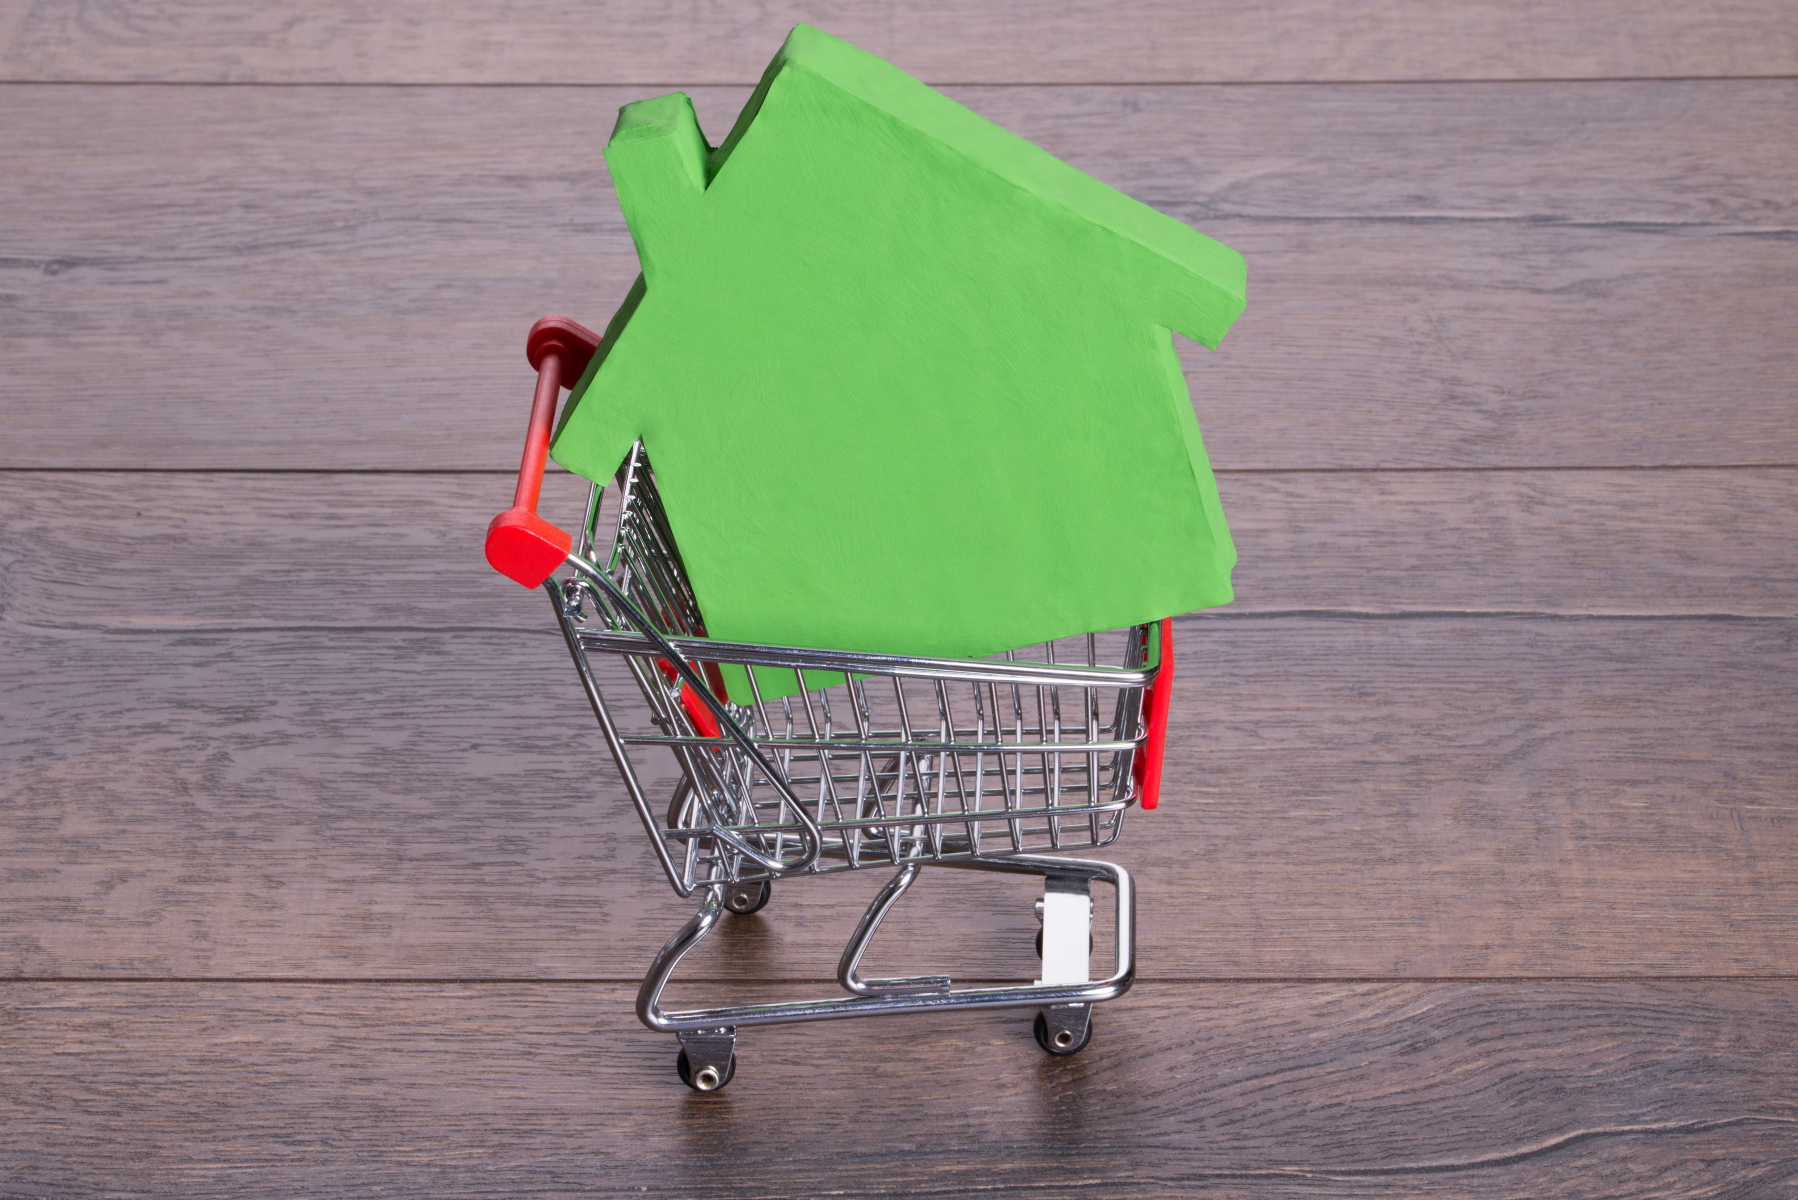 Grønt modellhus oppe i handlekurv